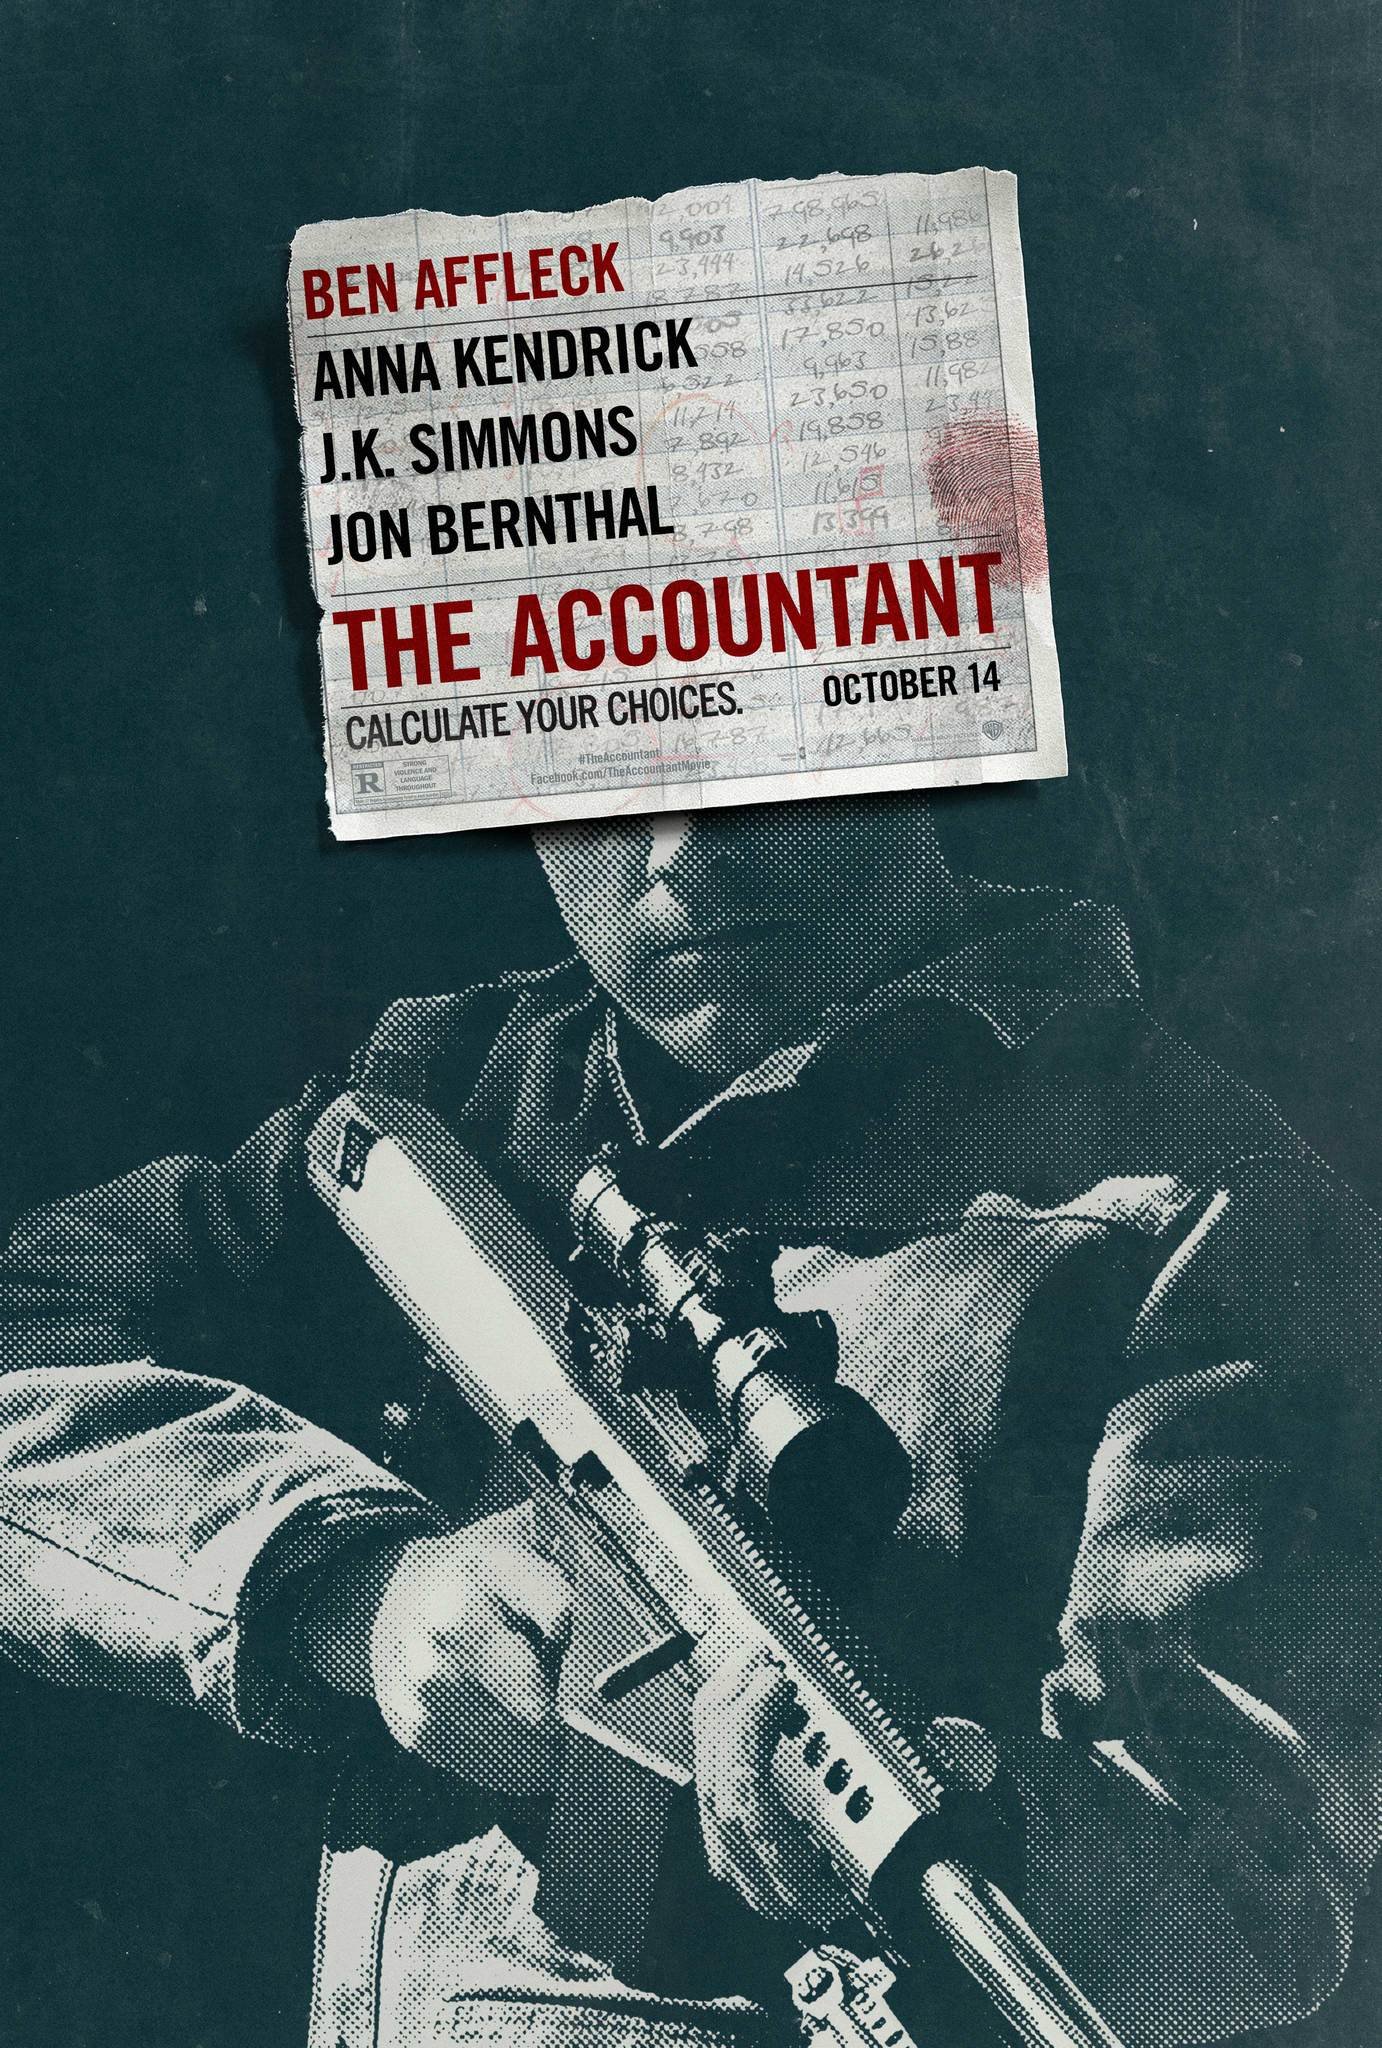 دانلود فیلم حسابدار - The Accountant 2016 با لینک مستقیم